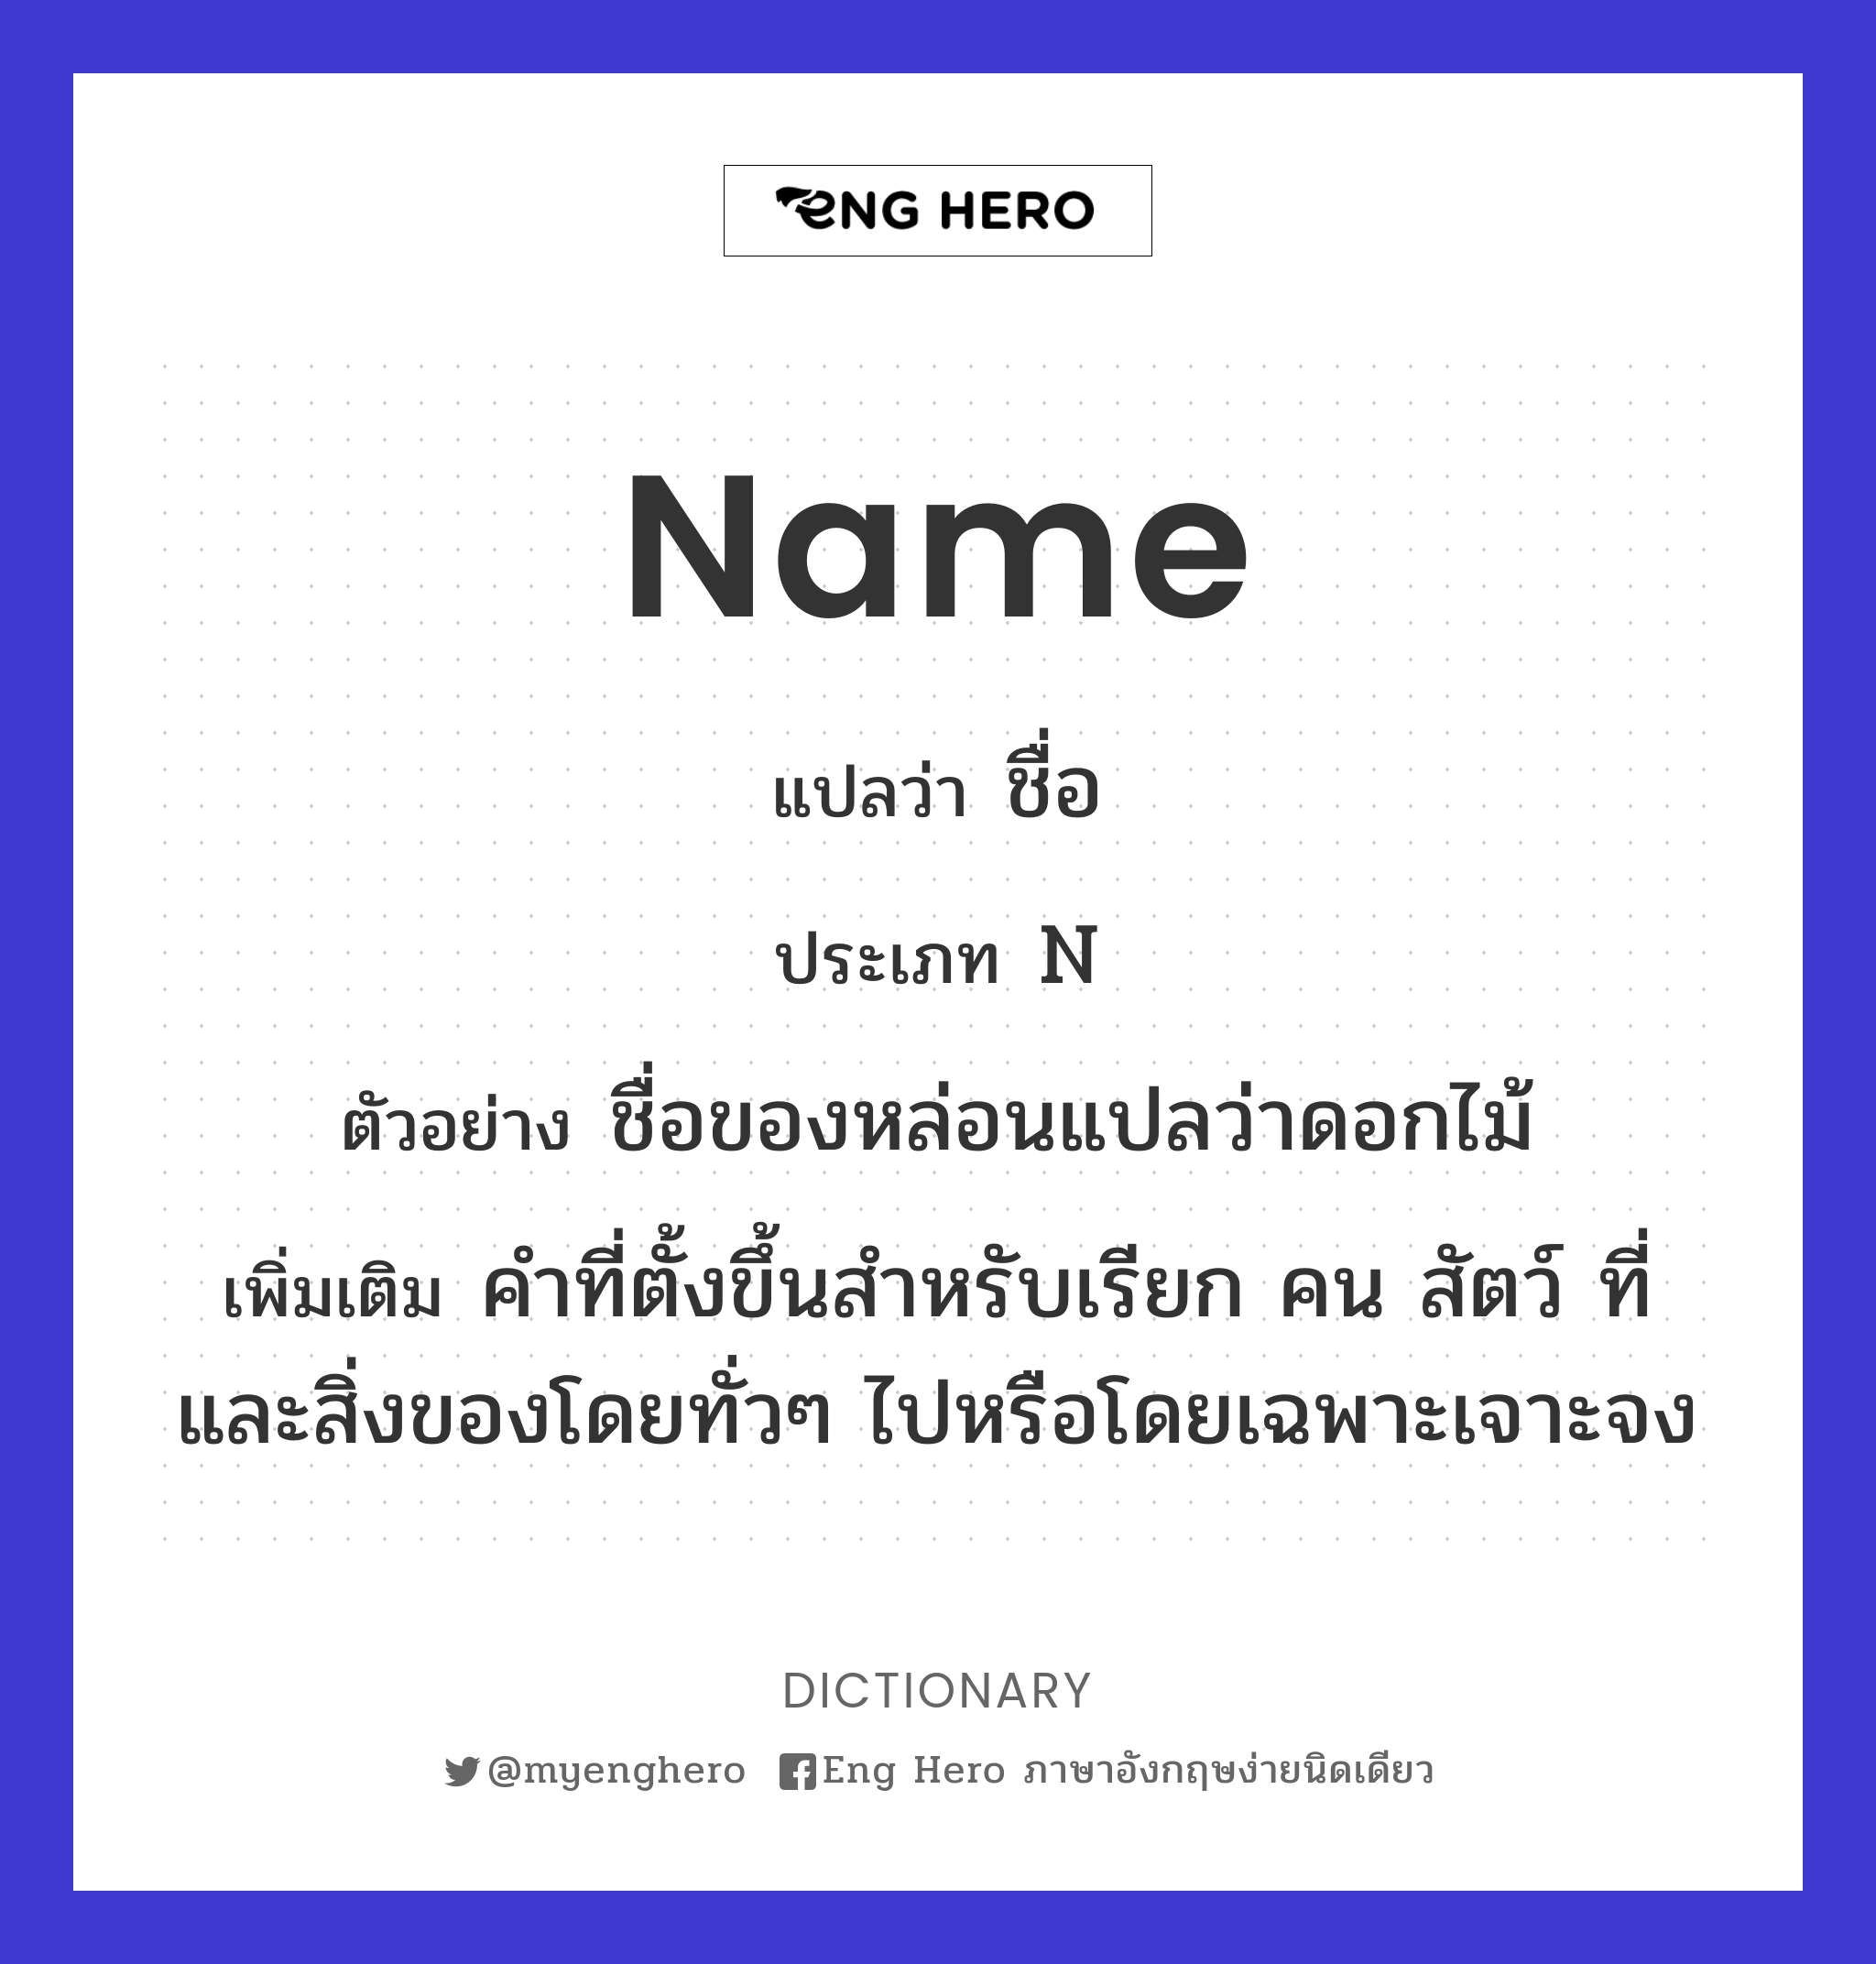 name